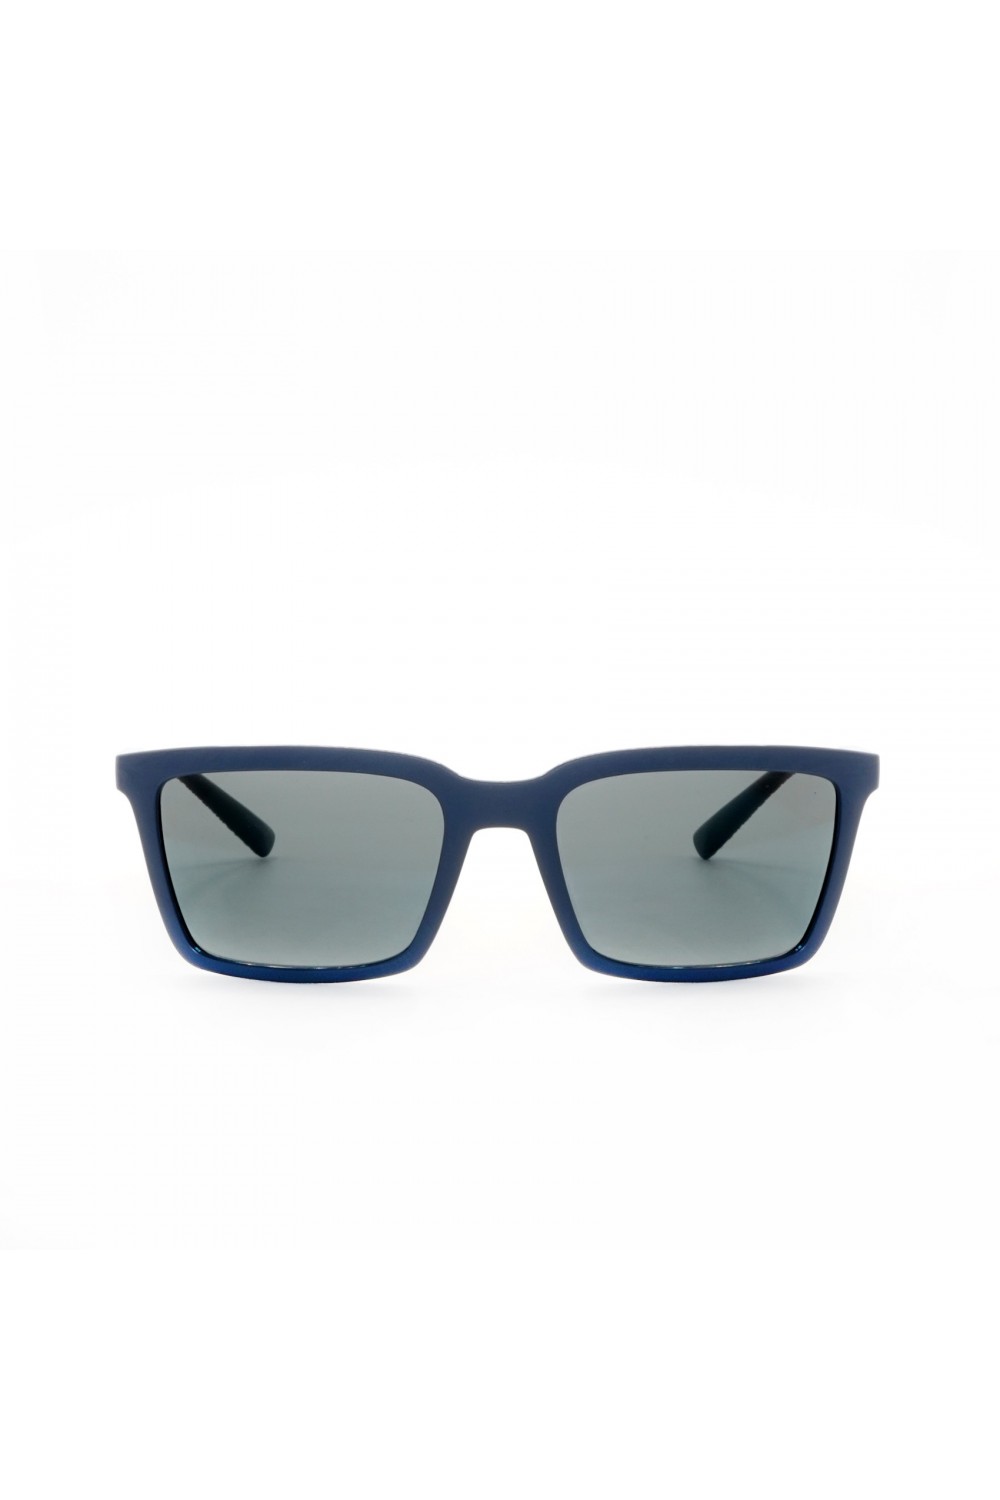 occhiali vetri blu